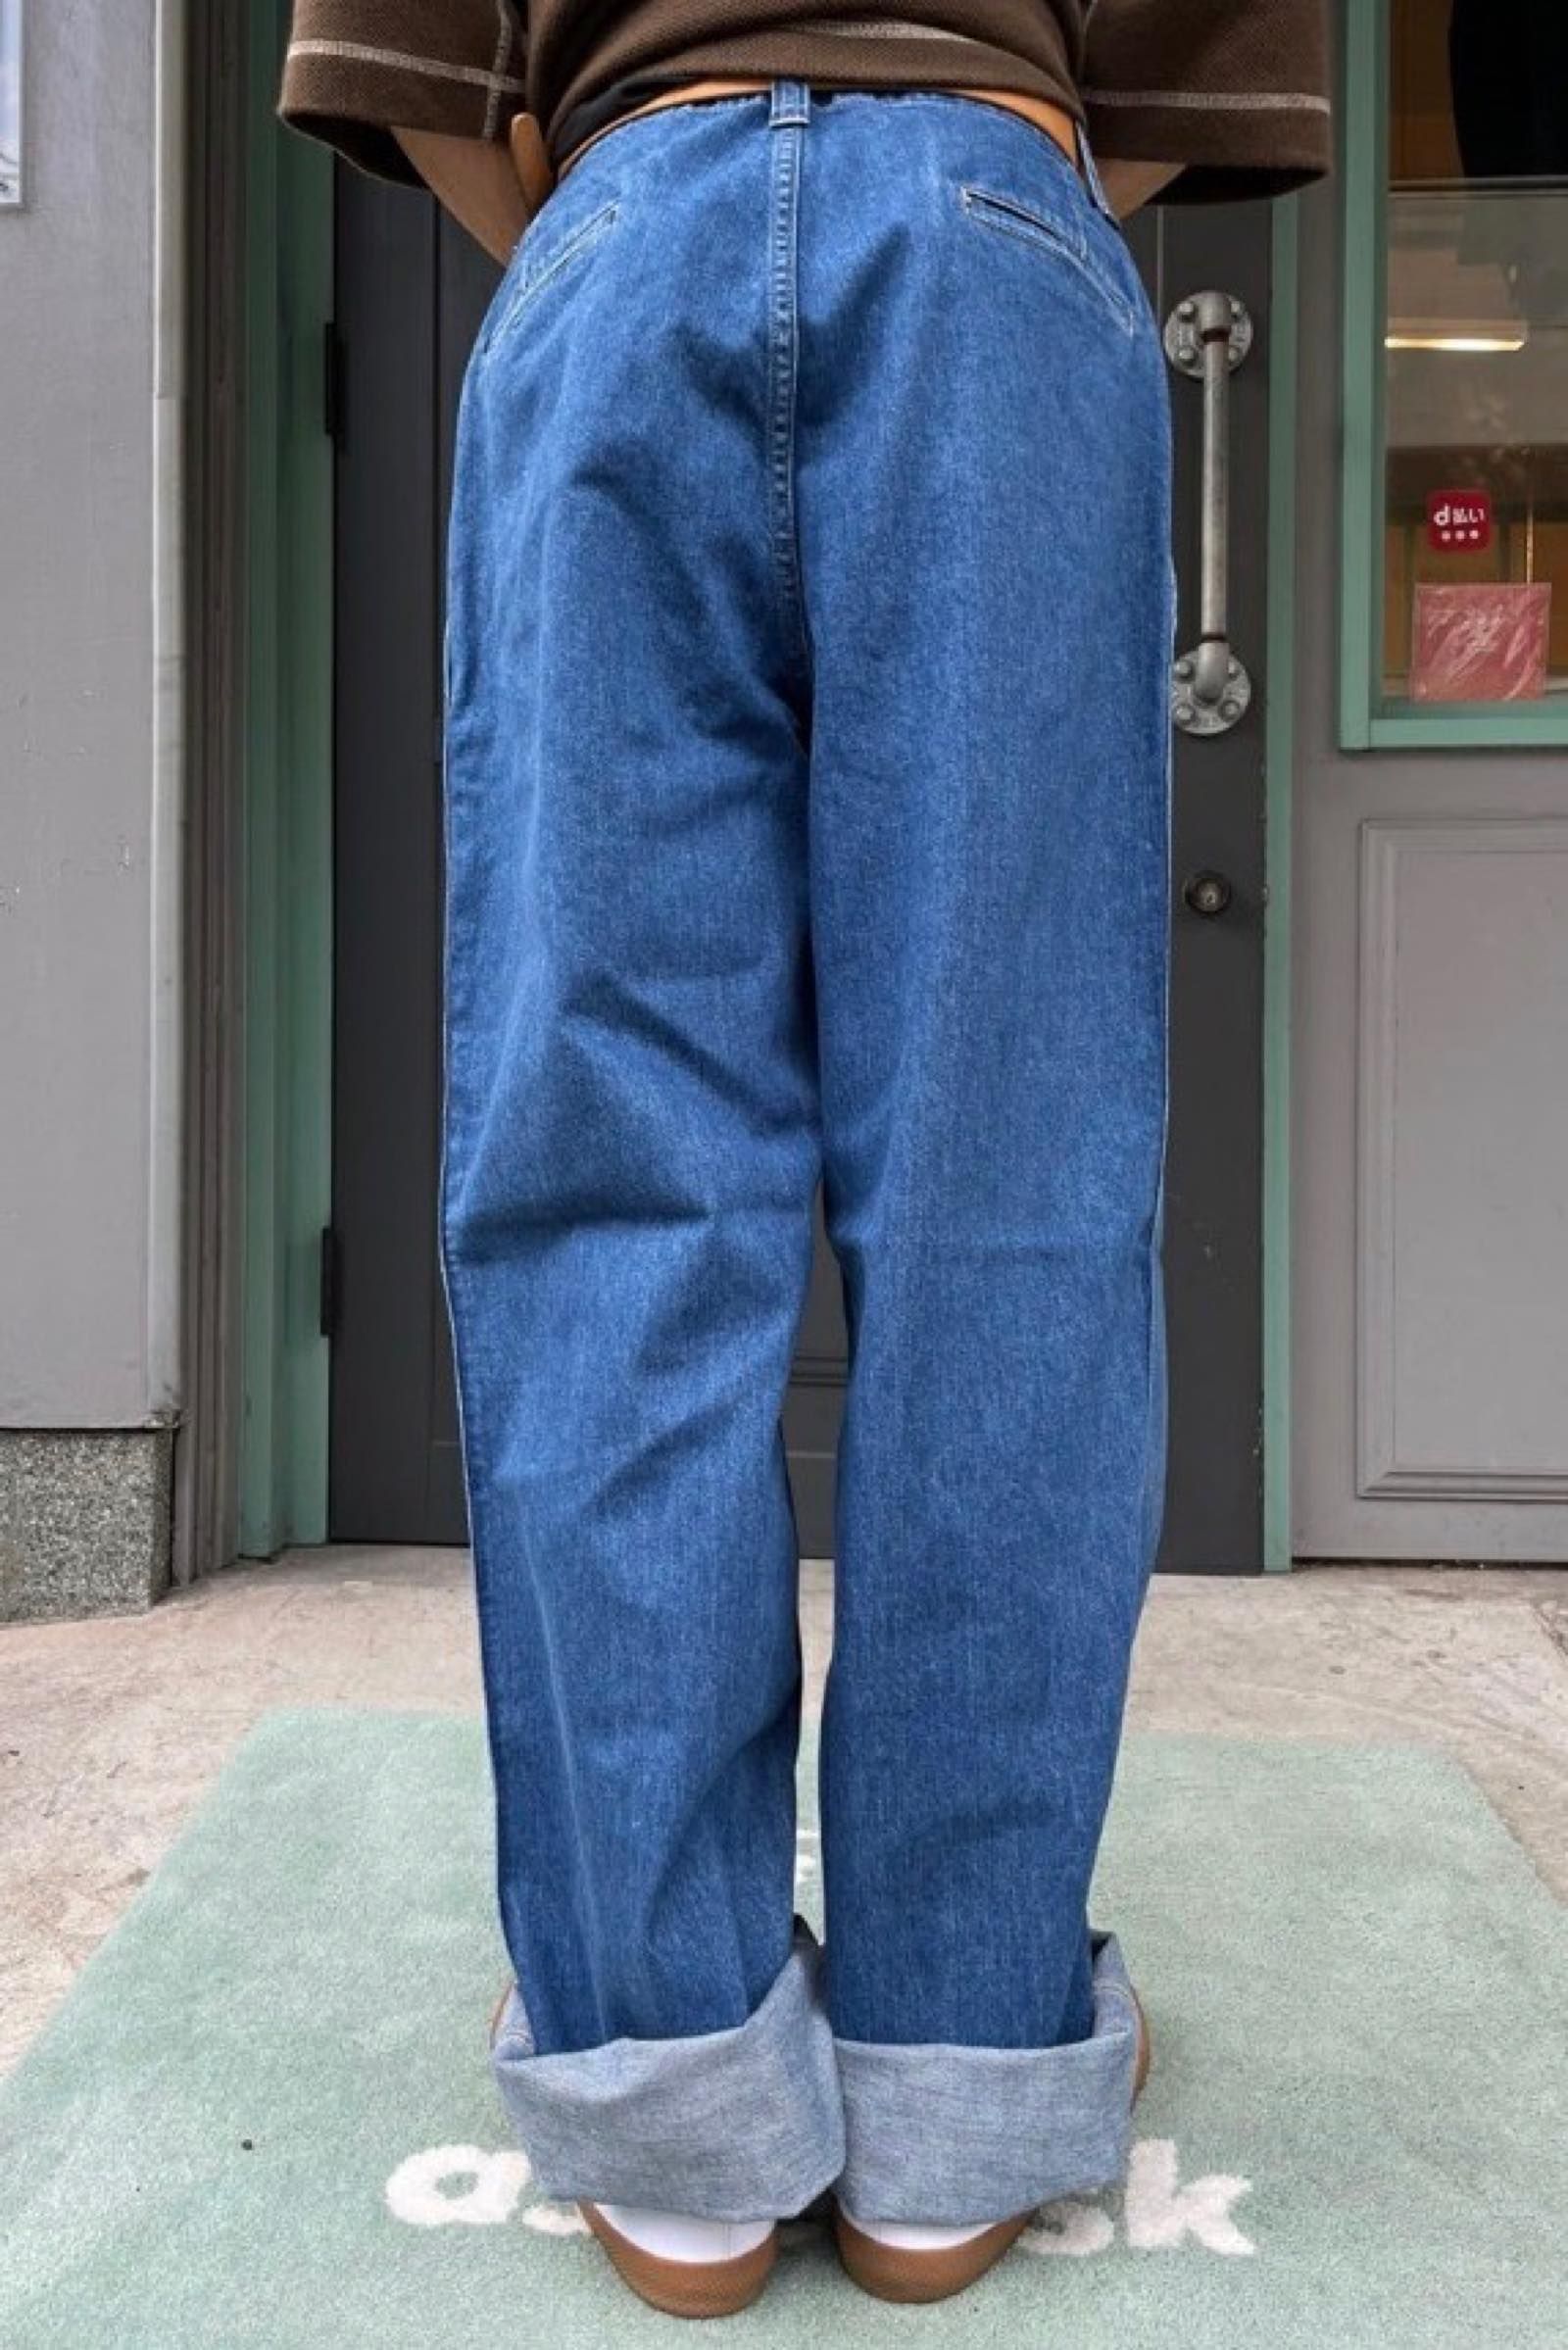 7,200円美品 e.tautz core field trousers denim